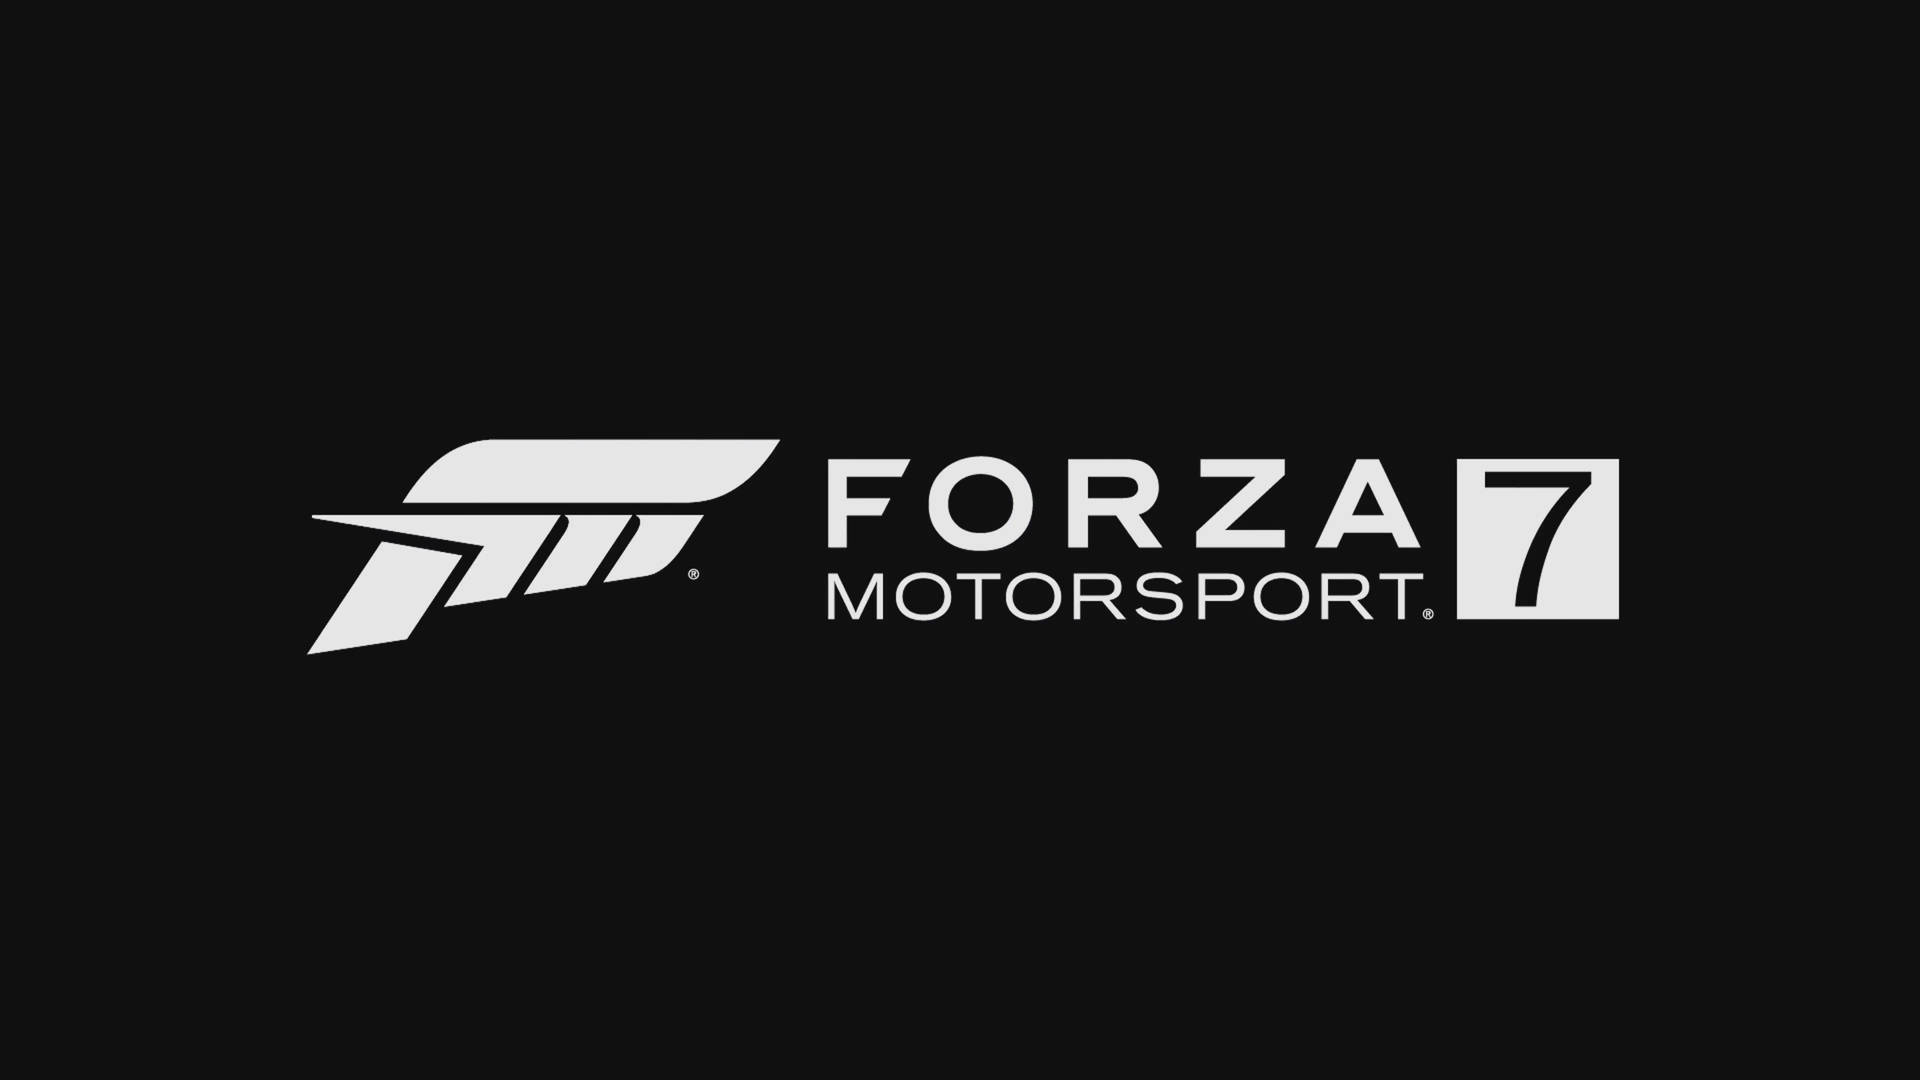 Forza Motorsport 7 Logo Wallpaper